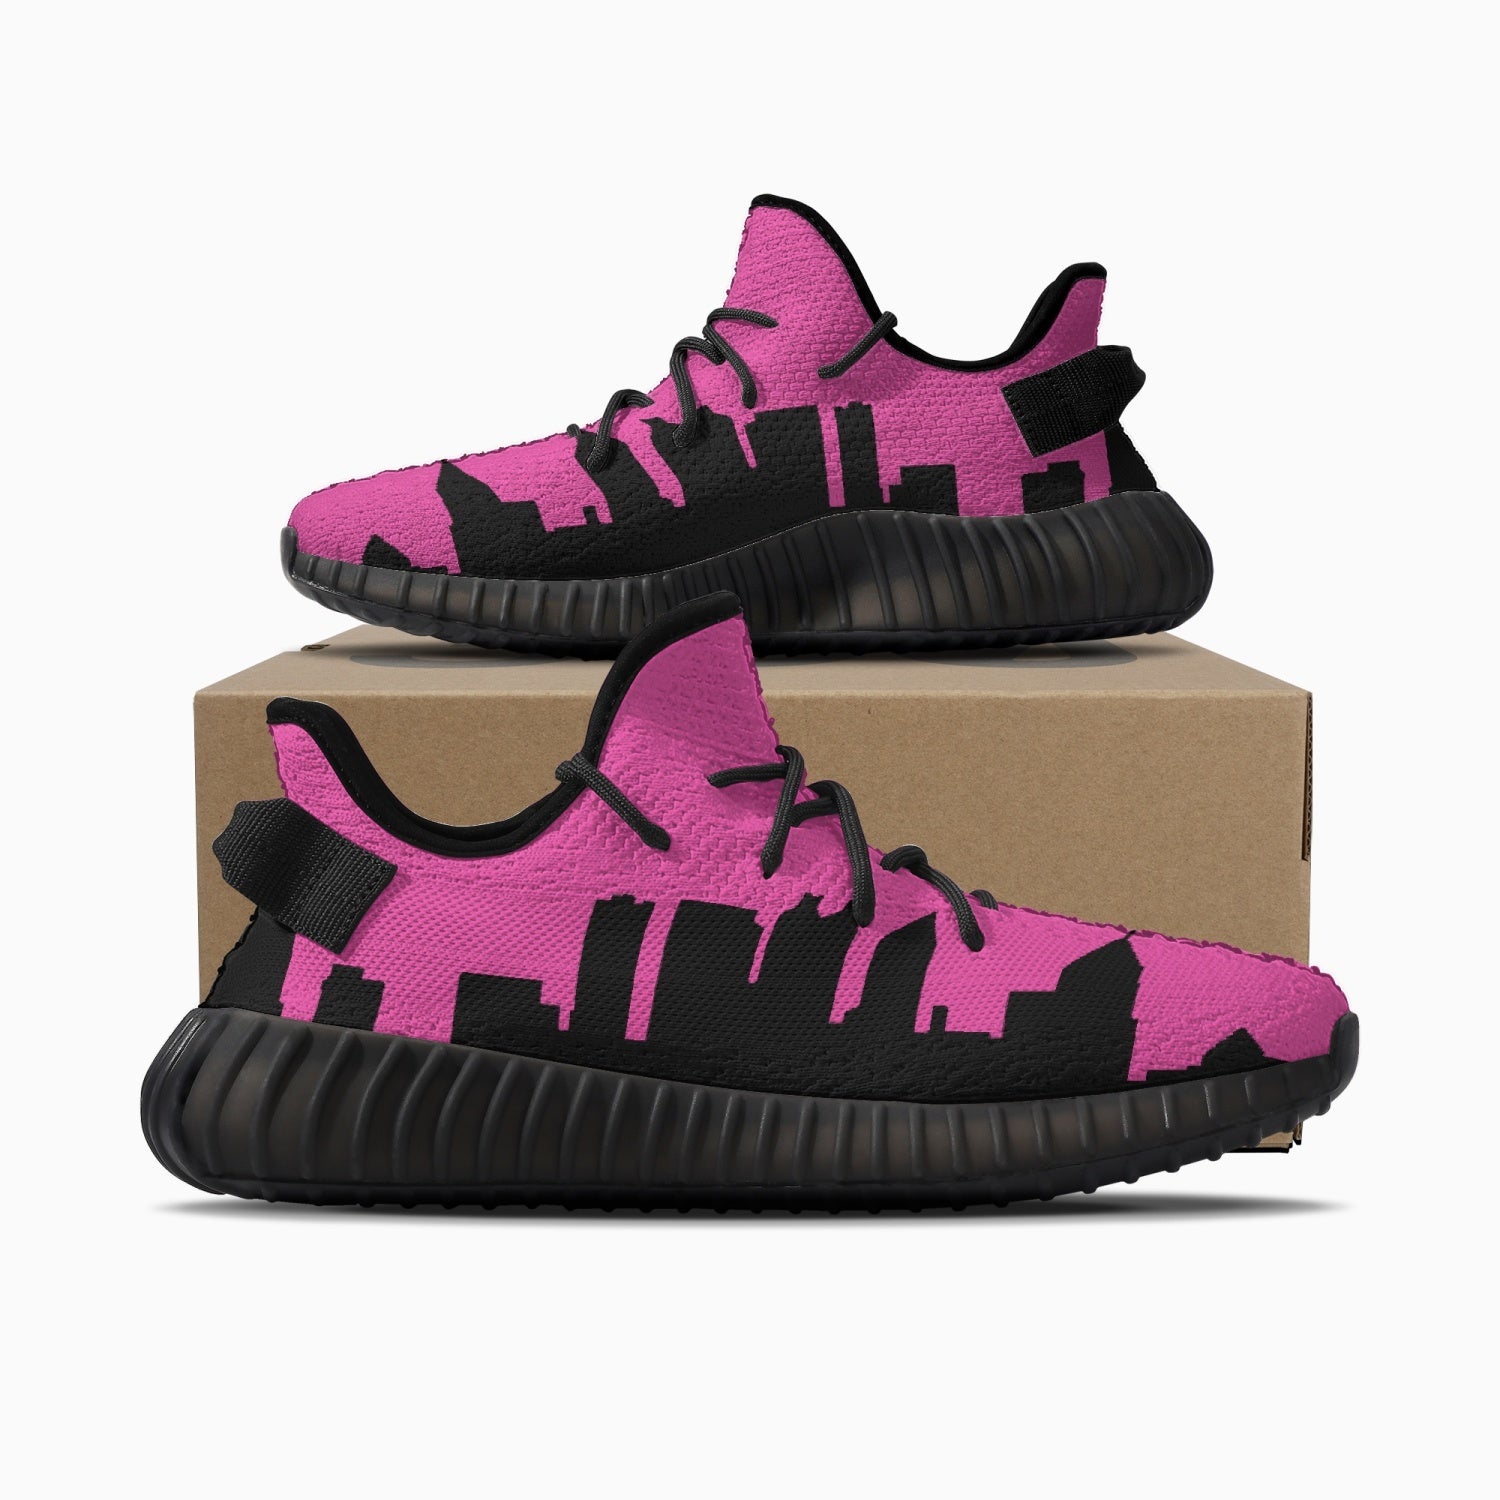 233. Neon Pink & Black Atlanta Skyline Adult Unisex Mesh Knit Sneakers